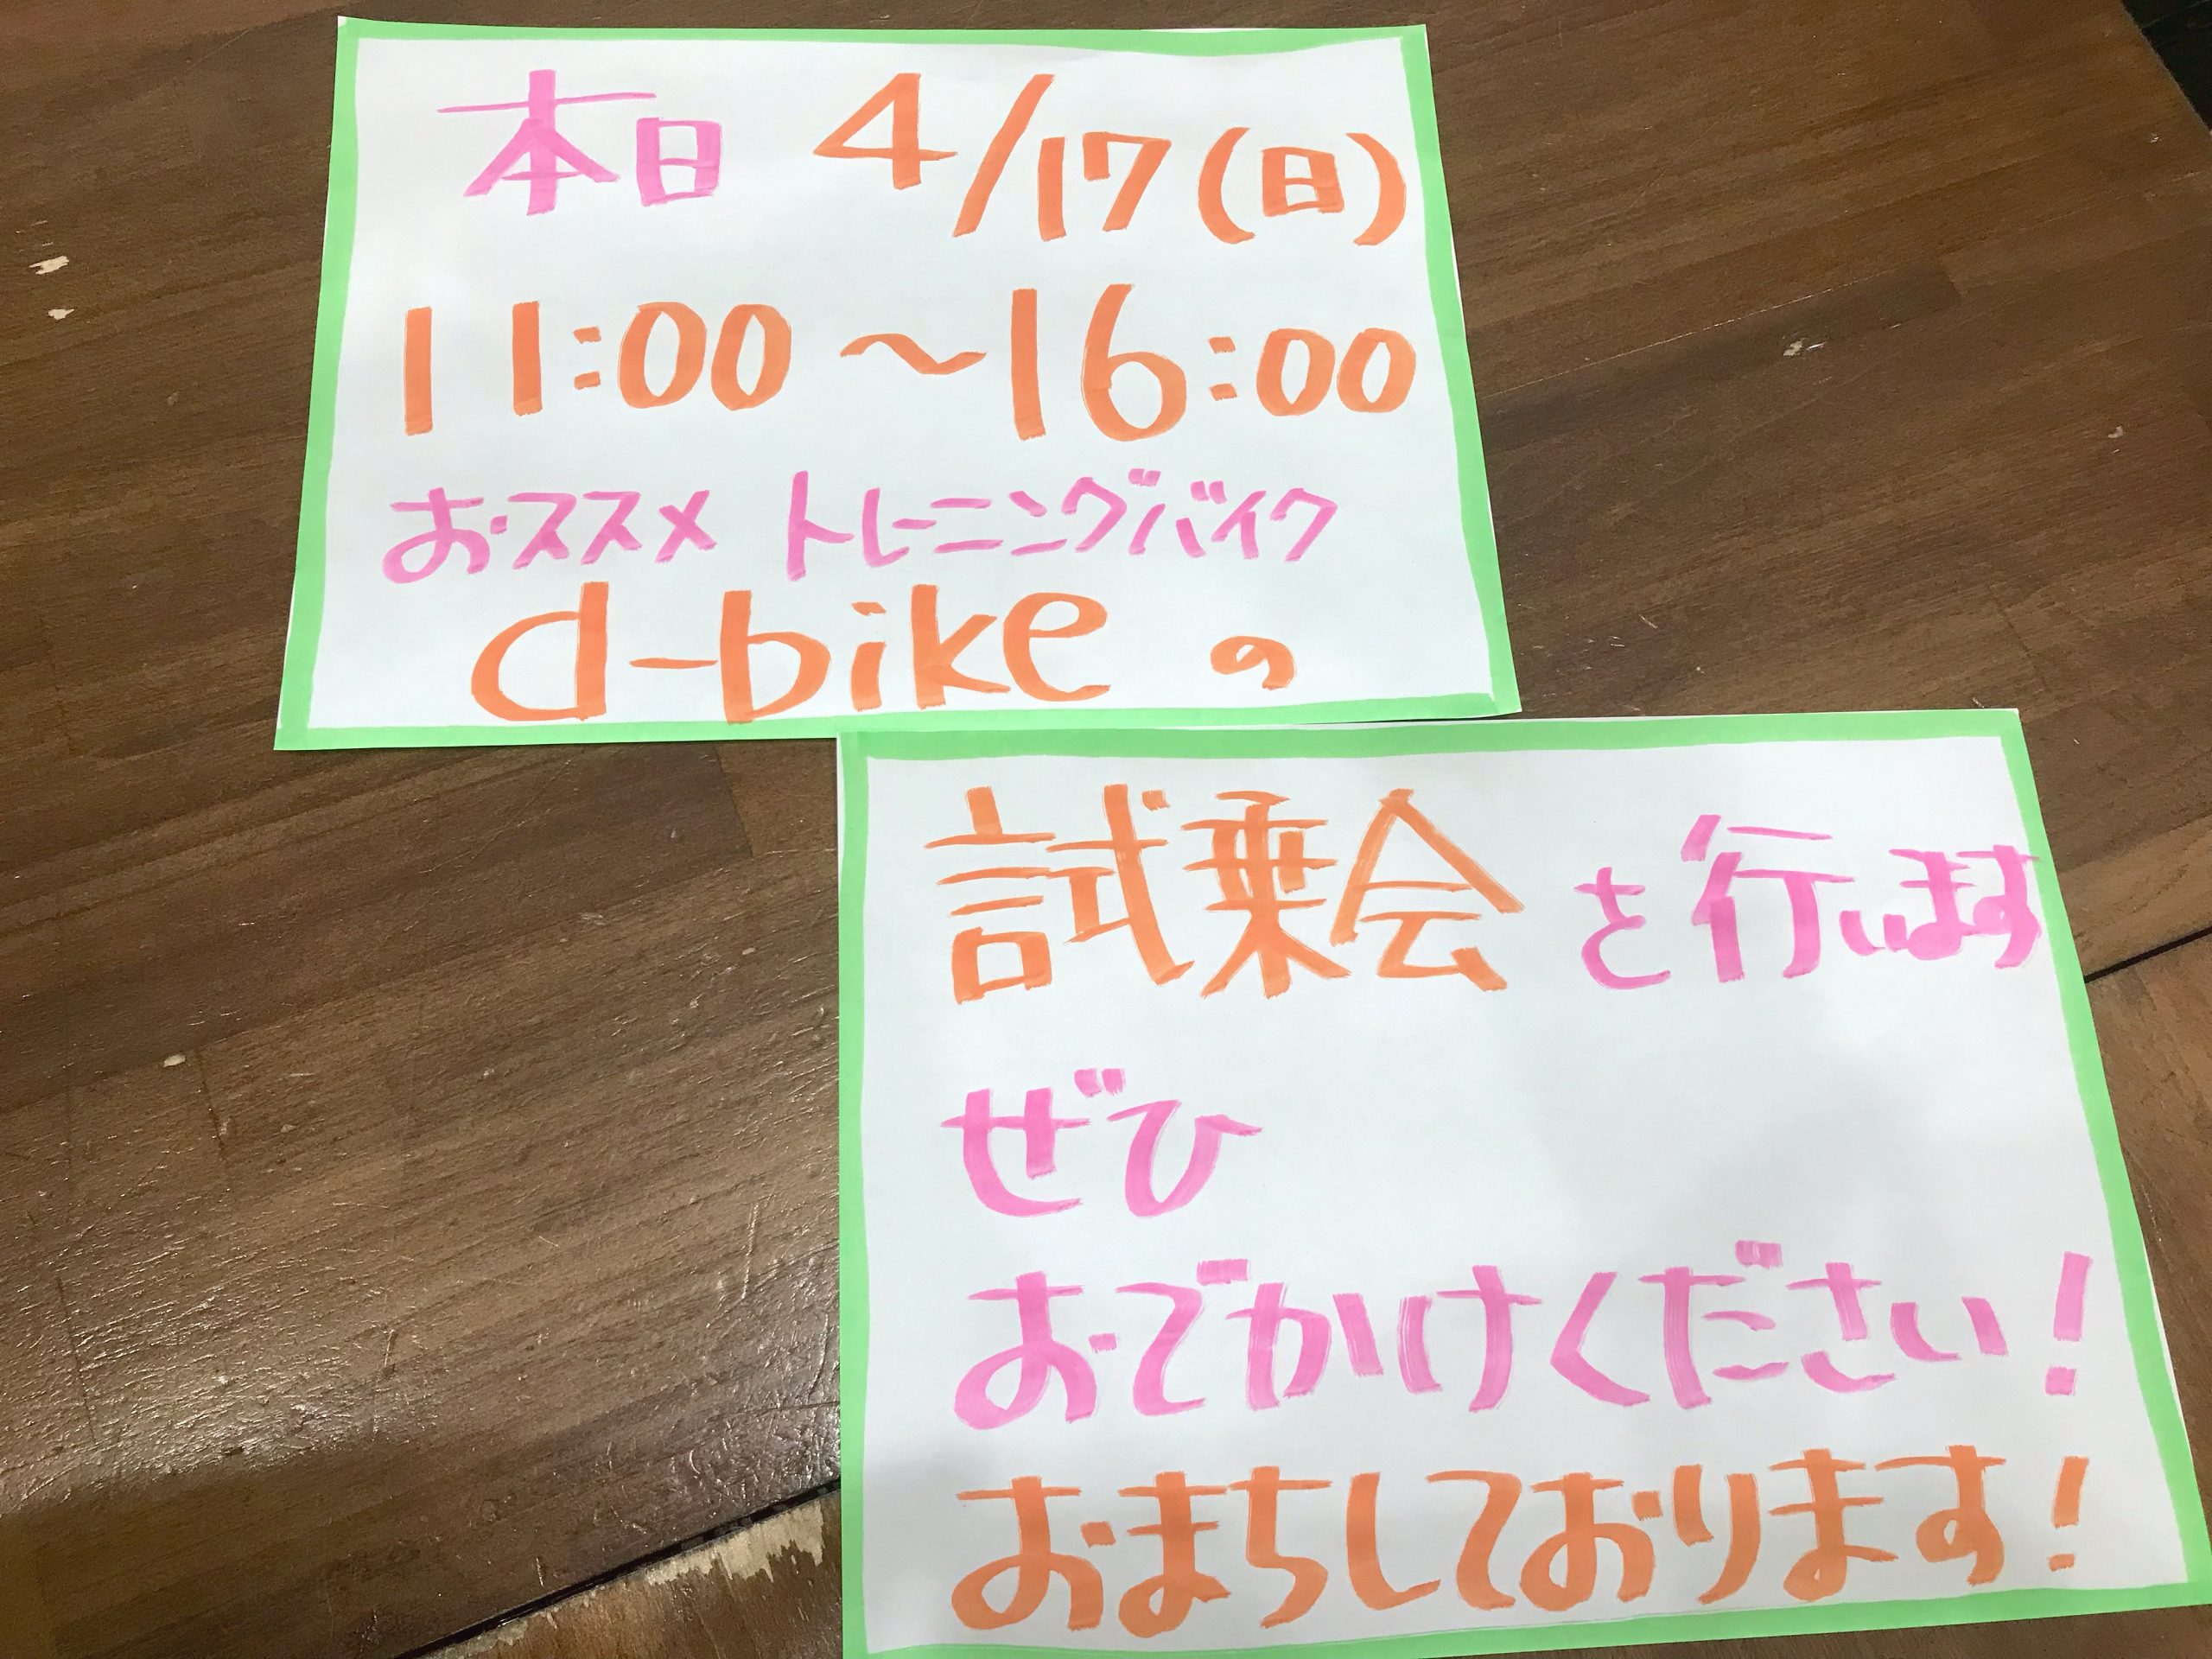 【大井町店】d-bike試乗会開催中！！！